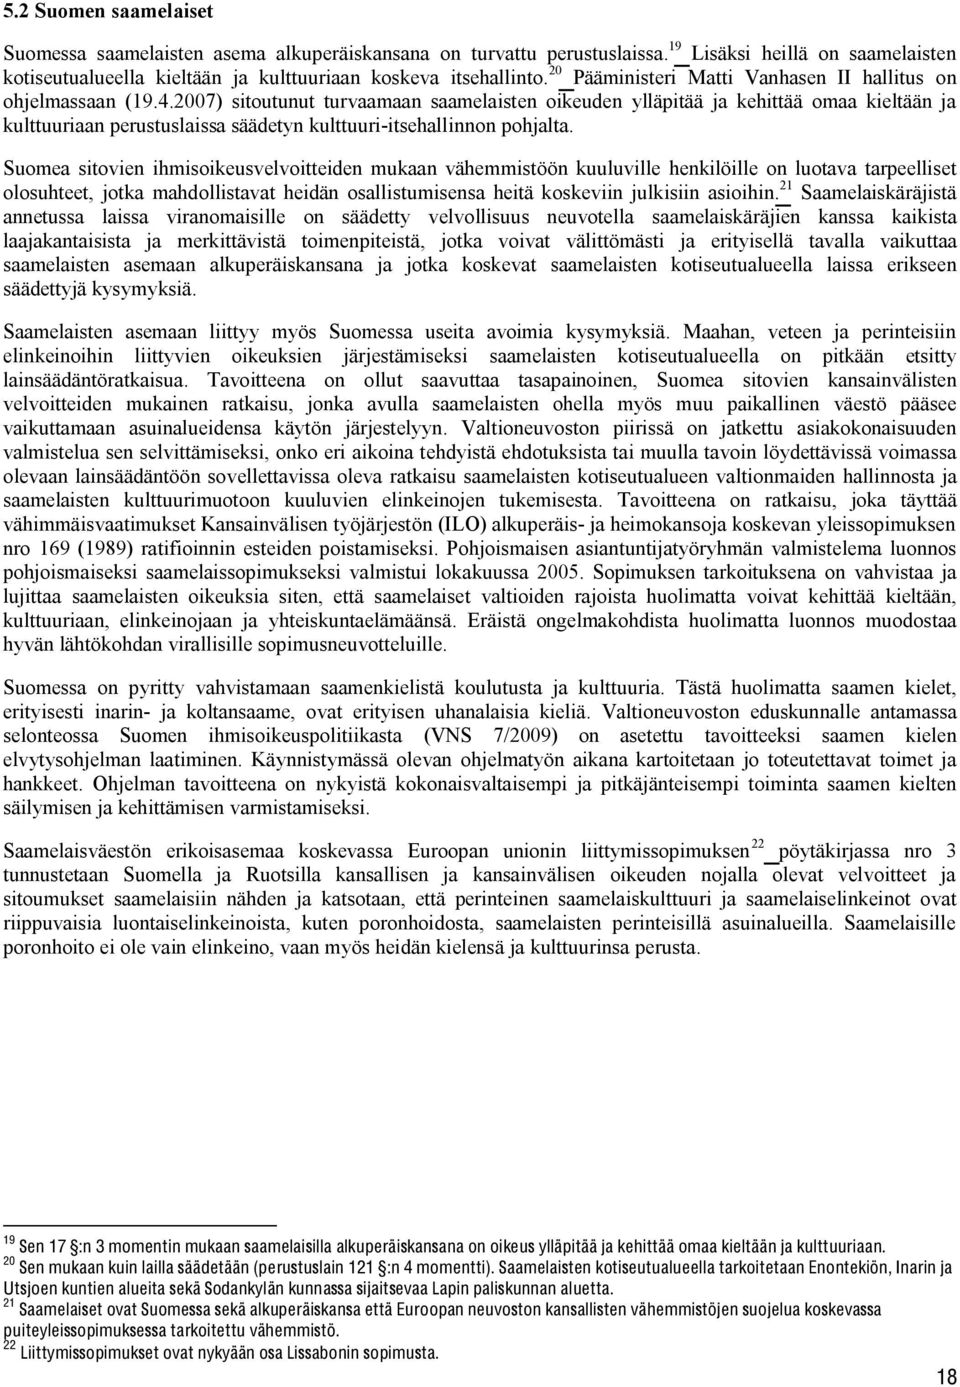 2007) sitoutunut turvaamaan saamelaisten oikeuden ylläpitää ja kehittää omaa kieltään ja kulttuuriaan perustuslaissa säädetyn kulttuuri-itsehallinnon pohjalta.